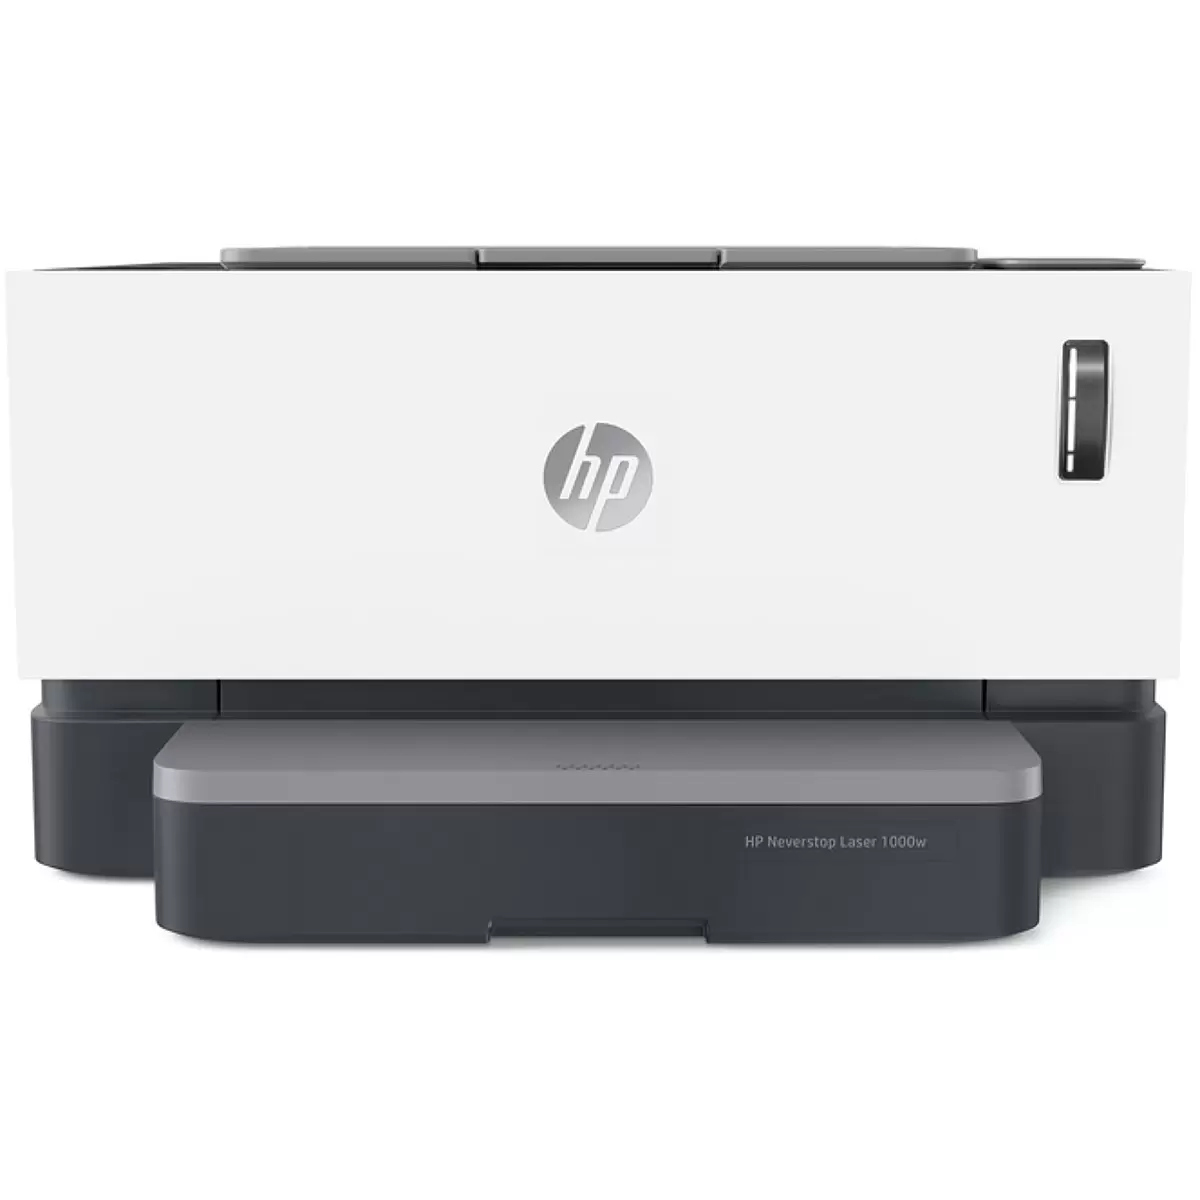 HP-Neverstop-1000w-laser-printer.webp